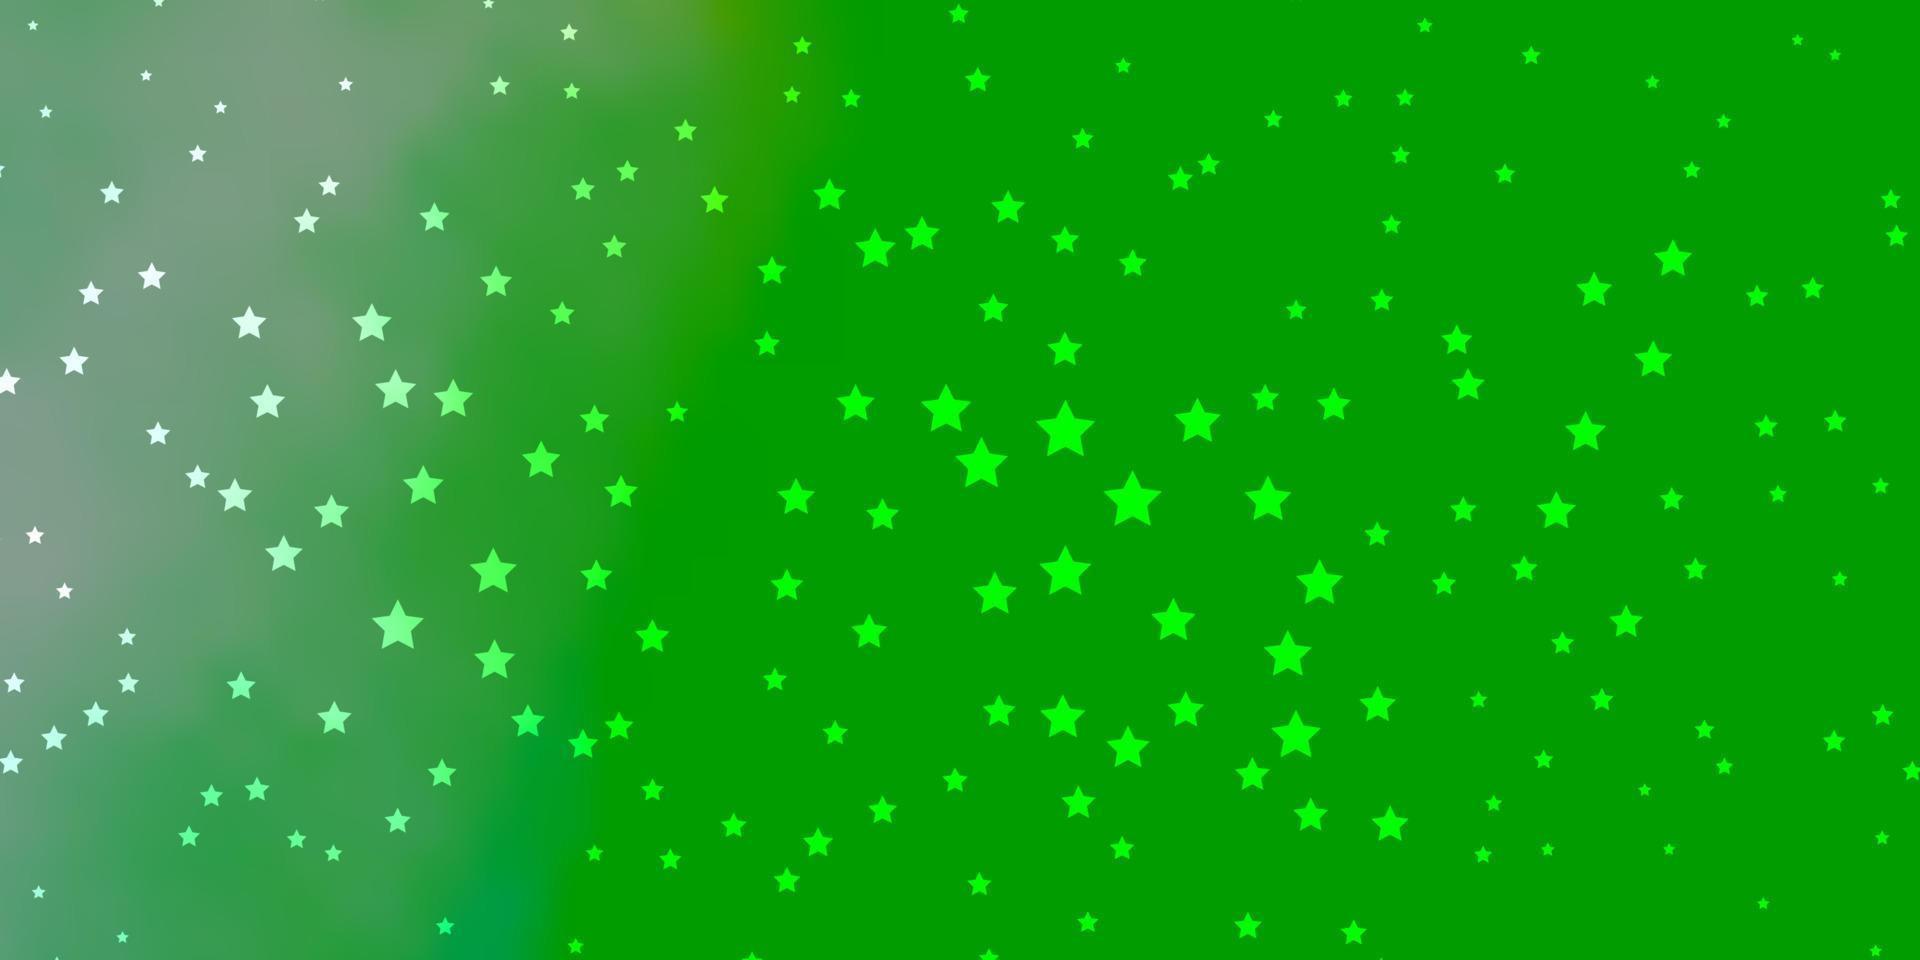 texture vecteur vert foncé avec de belles étoiles.